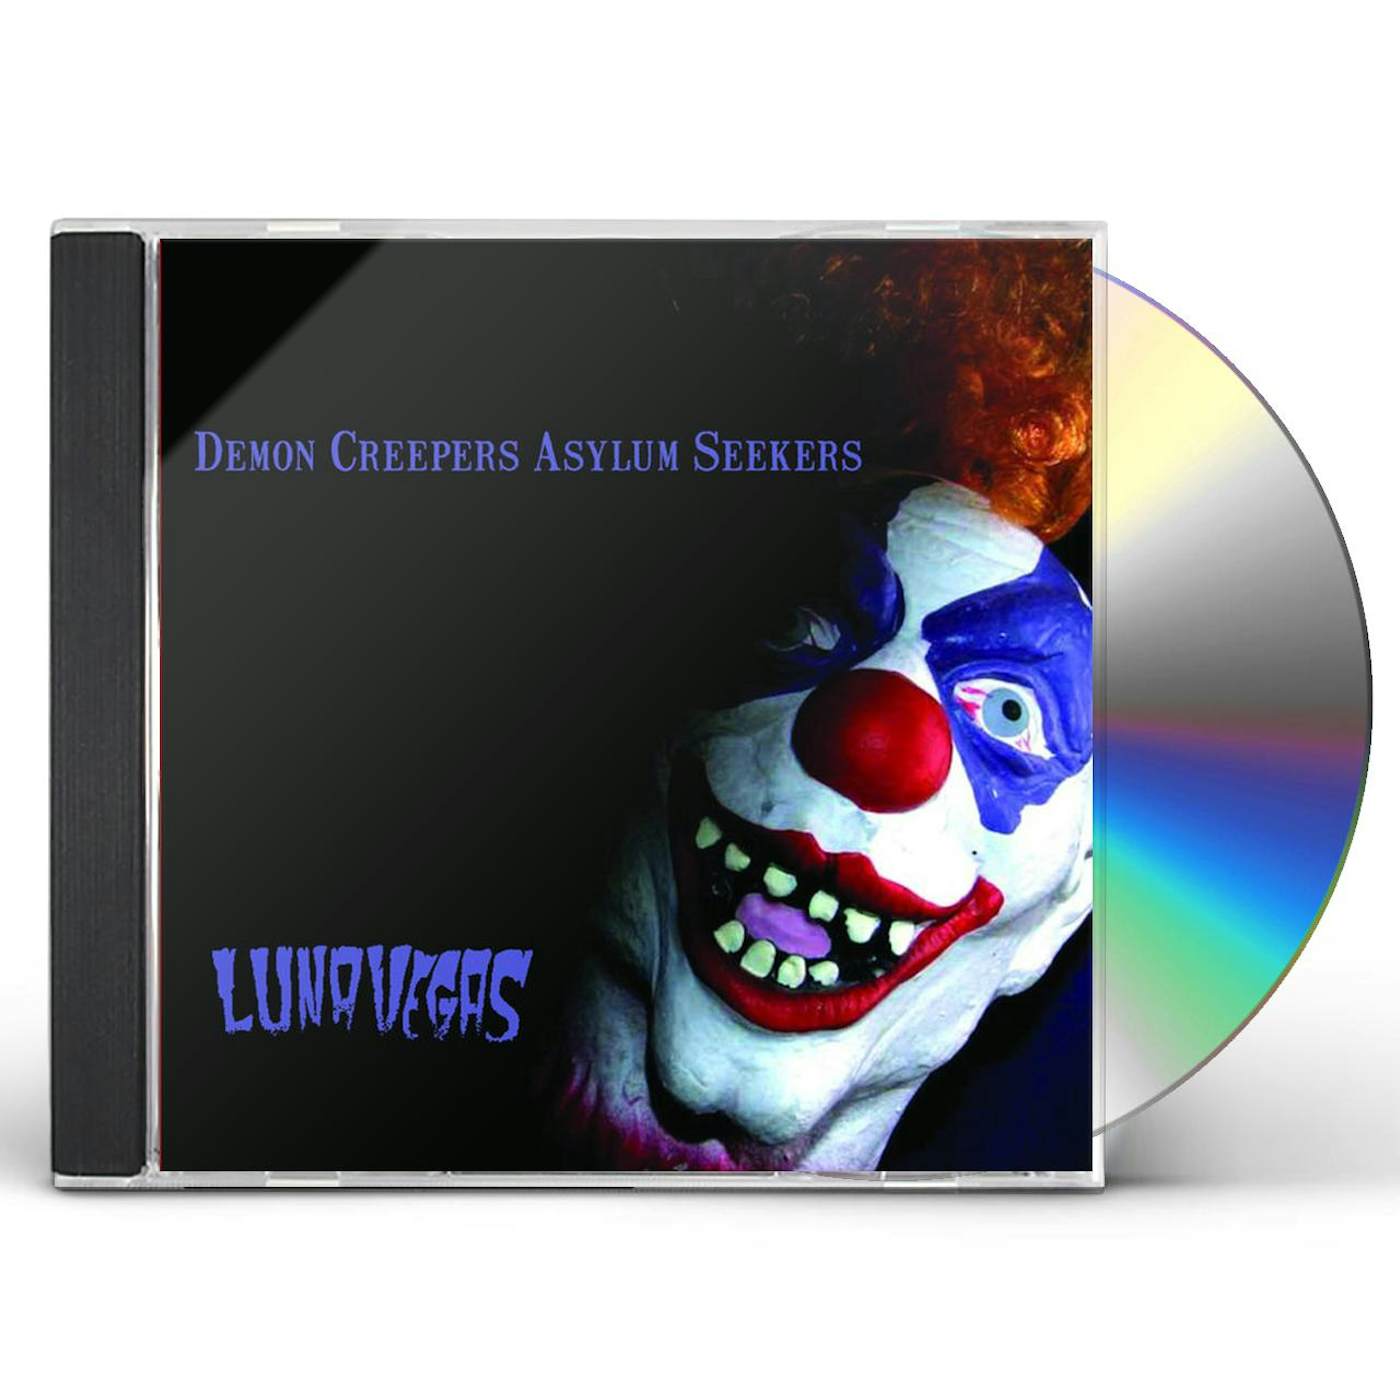 Luna Vegas DEMON CREEPERS, ASYLUM SEEKERS CD